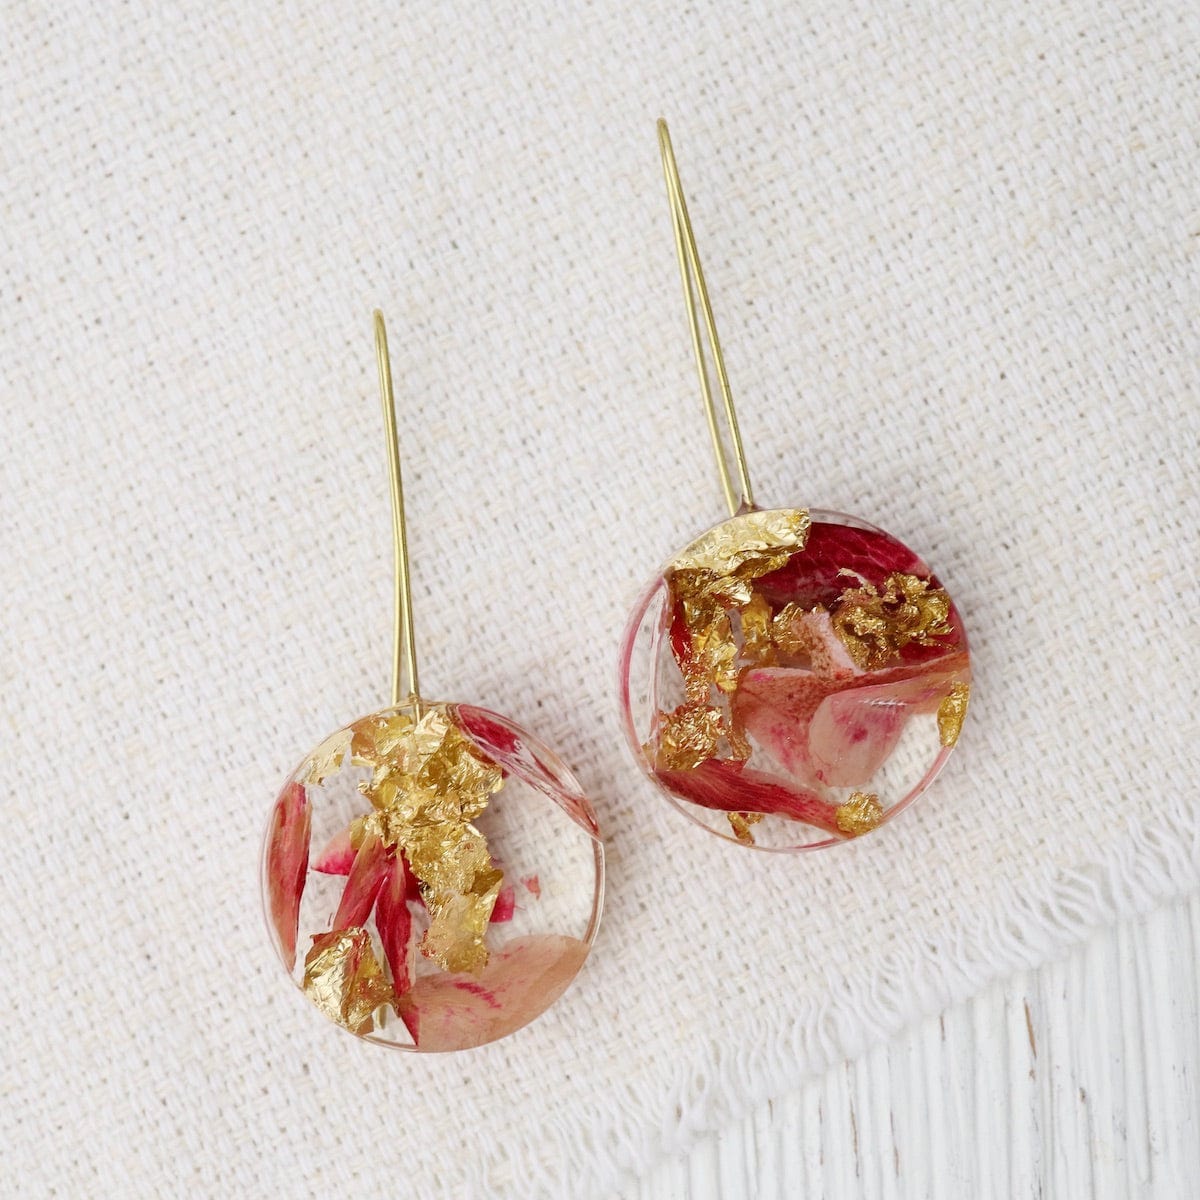 EAR-GPL Botanical Small Full Moon Rose Petal Earrings